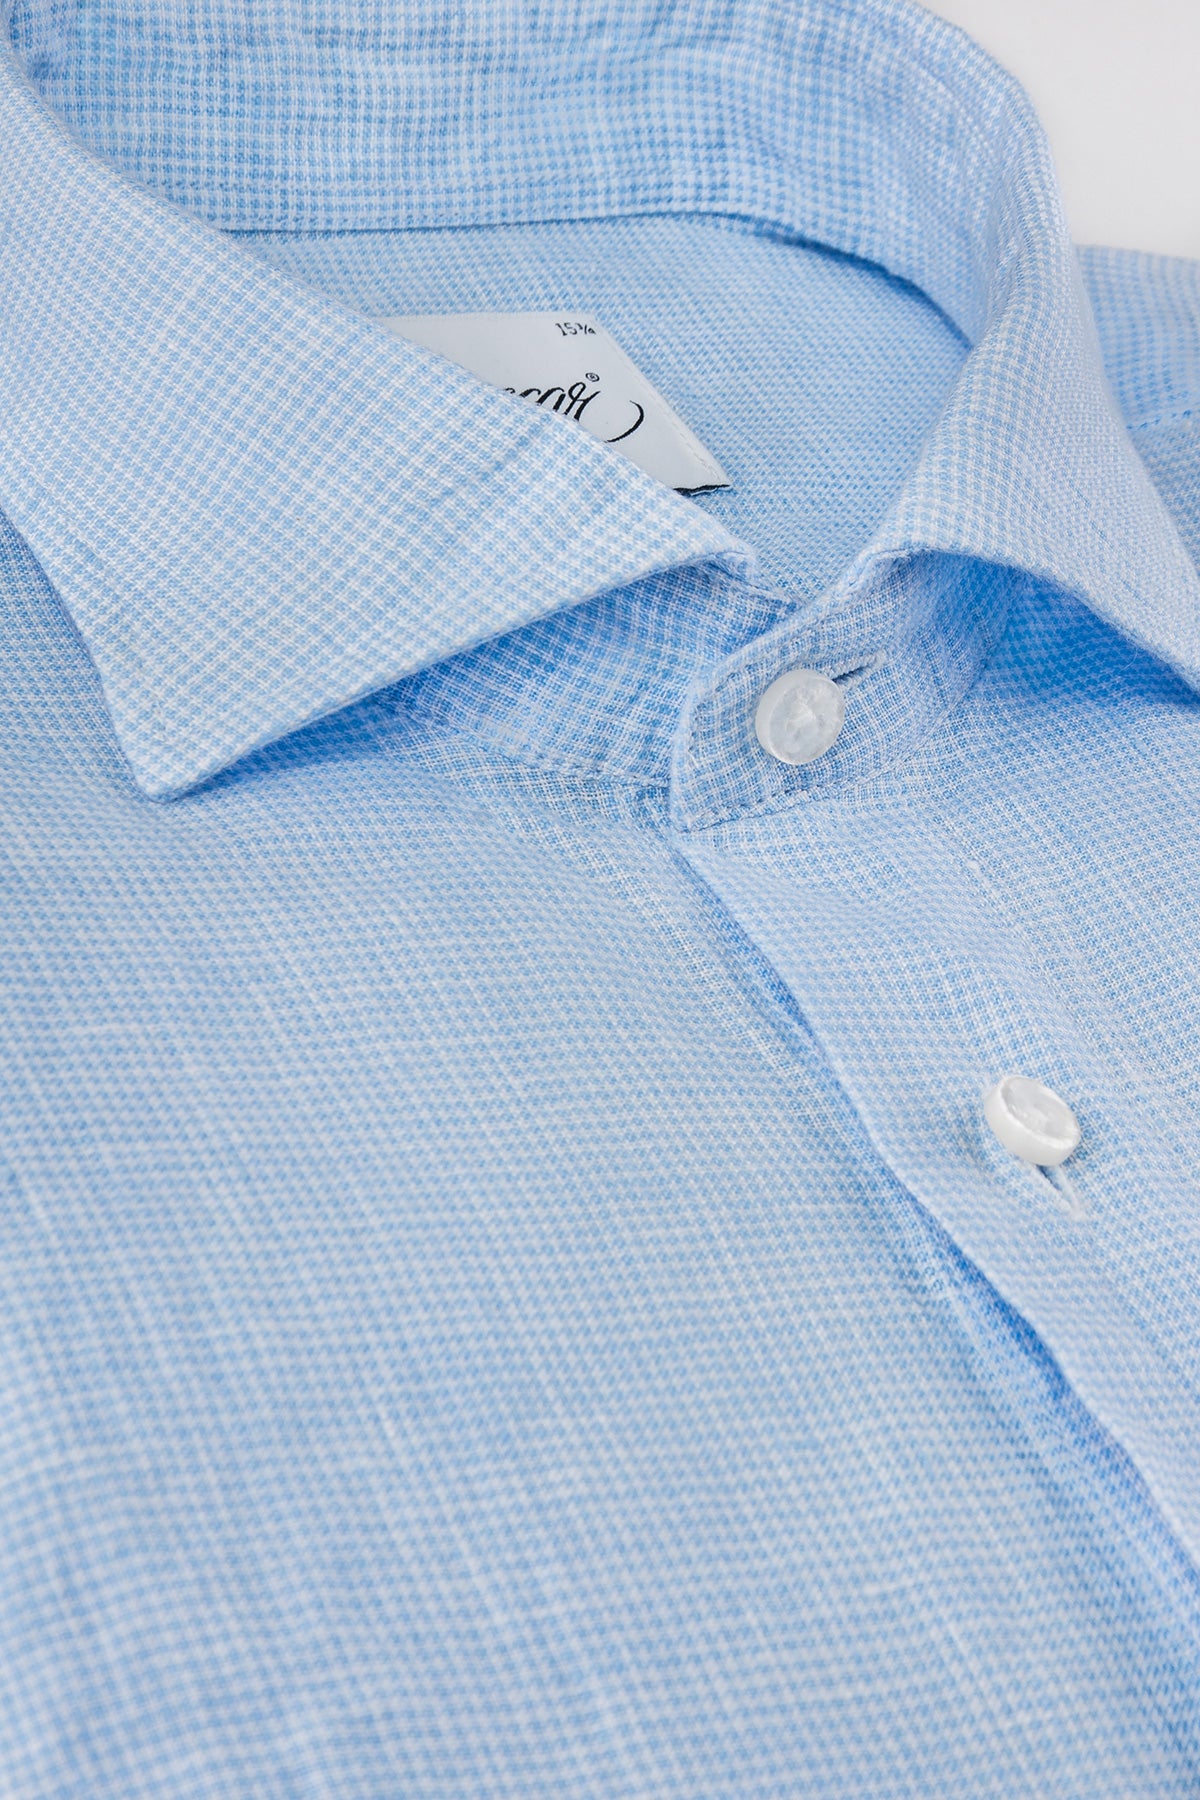 Light blue houndstooth linen regular fit shirt